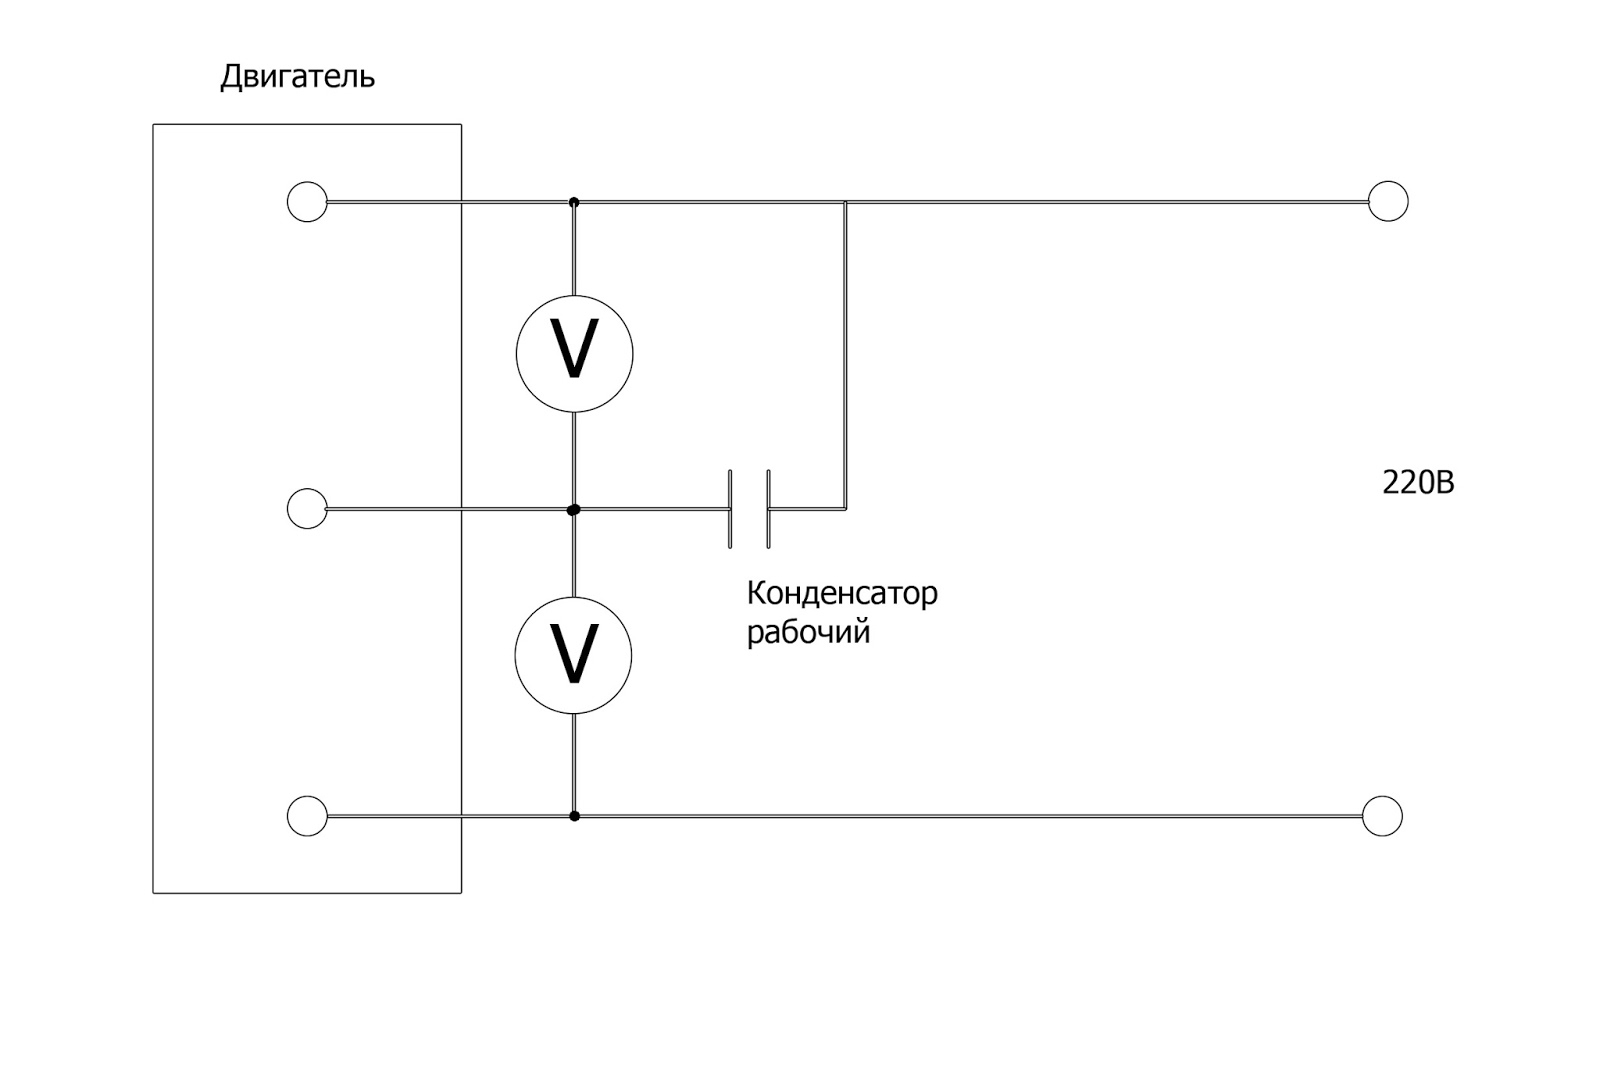 Как подобрать конденсатор к электродвигателю 220в. Схема подключения точила через конденсатор. Конденсатор между фазой и нулем. МБГЧ конденсатор схема подключения. Подбор конденсатора для выключателя.